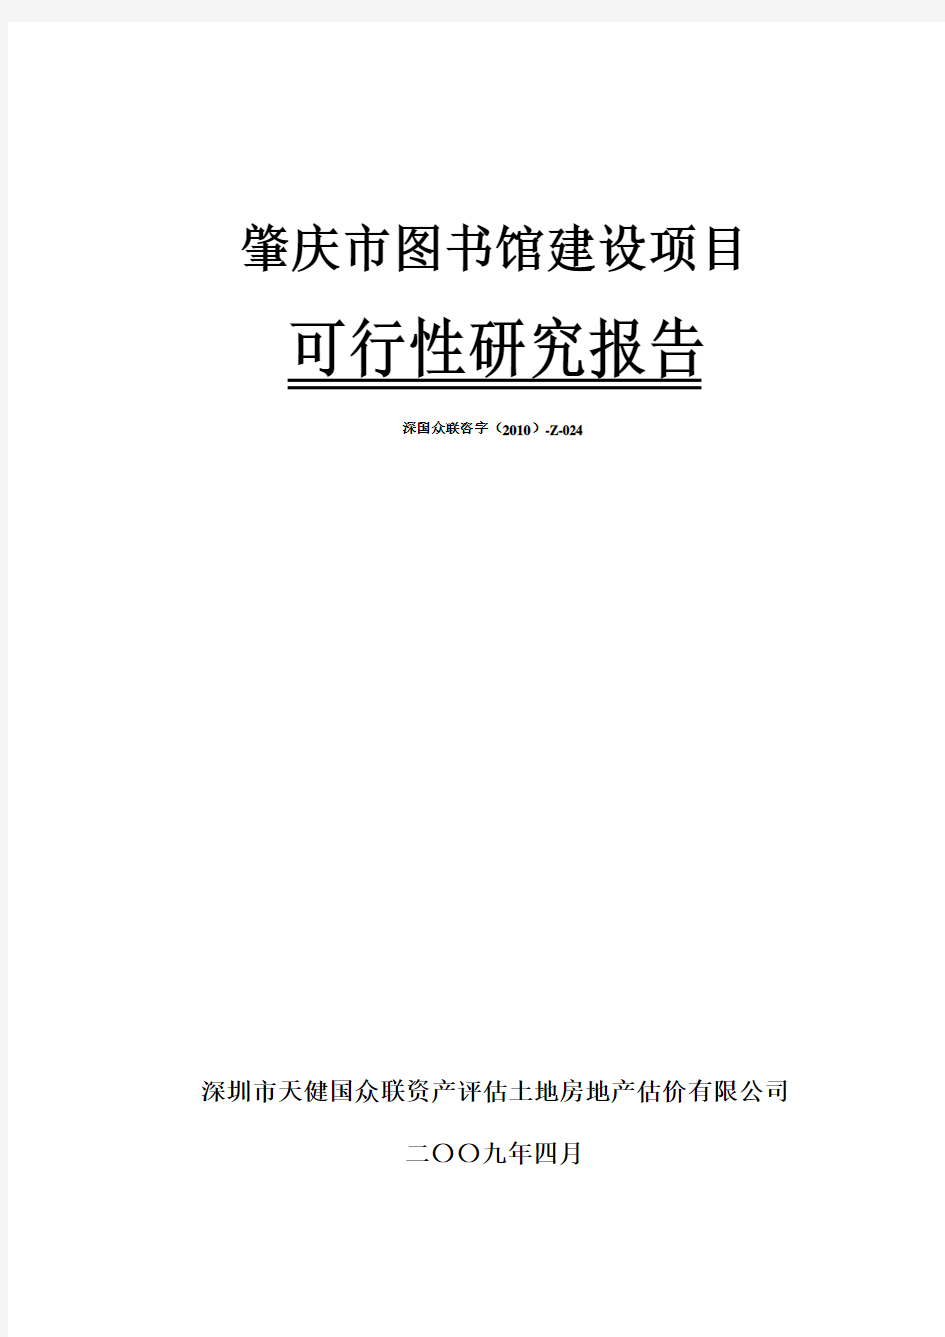 (最新版)肇庆市图书馆建设项目可行性研究报告书